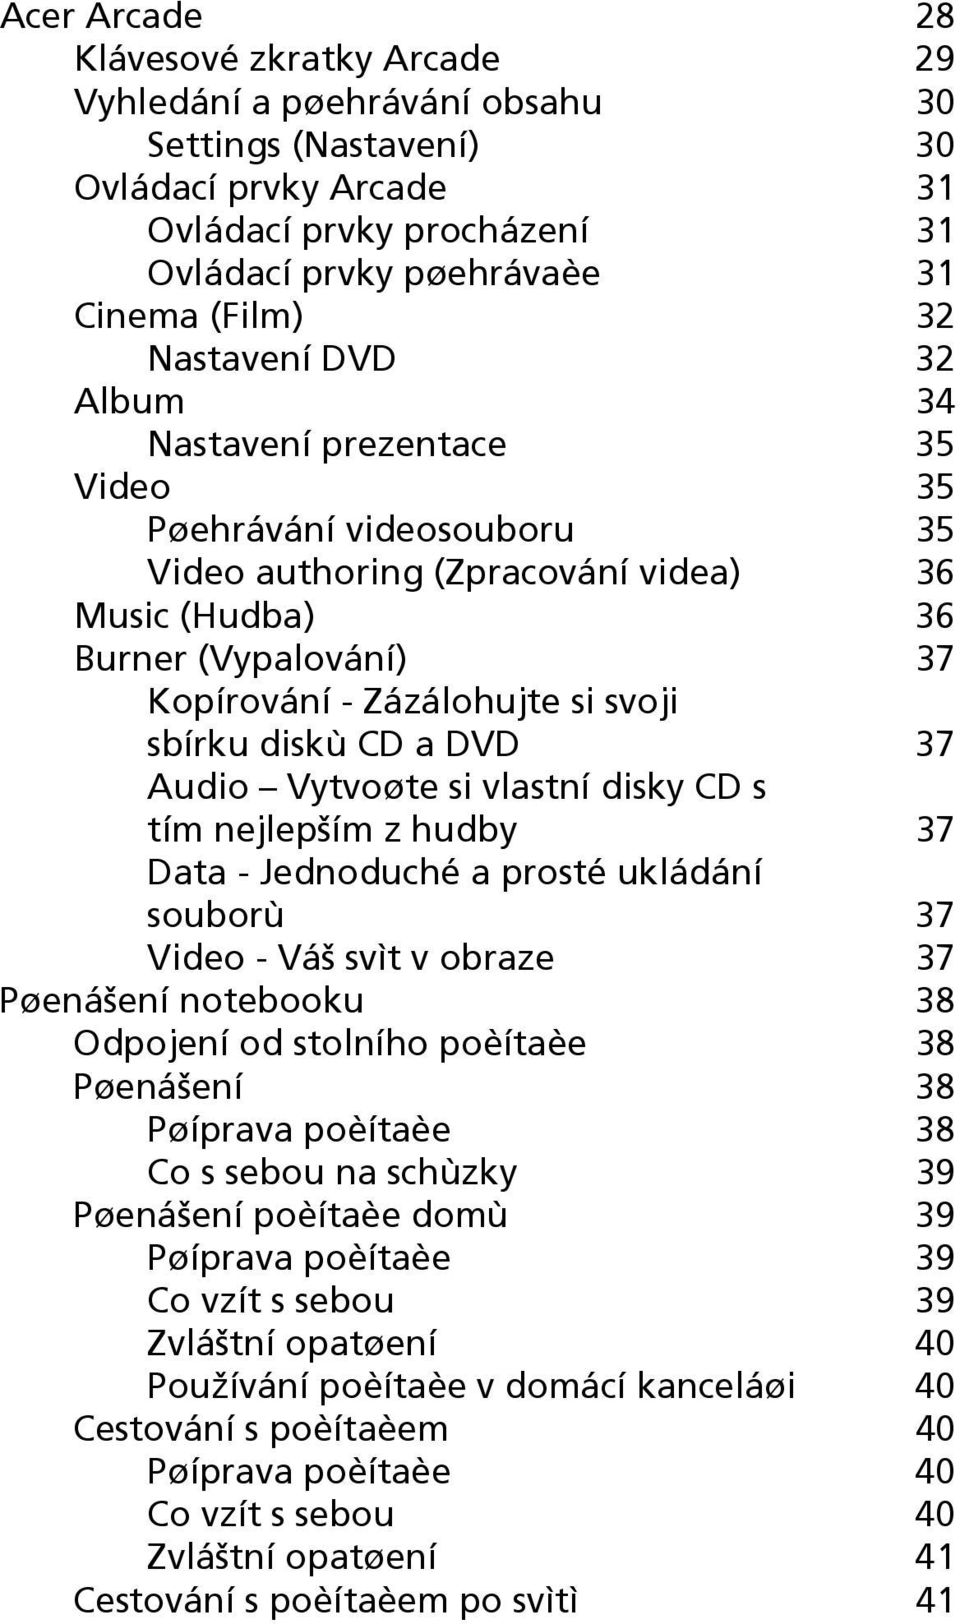 sbírku diskù CD a DVD 37 Audio Vytvoøte si vlastní disky CD s tím nejlepším z hudby 37 Data - Jednoduché a prosté ukládání souborù 37 Video - Váš svìt v obraze 37 Pøenášení notebooku 38 Odpojení od